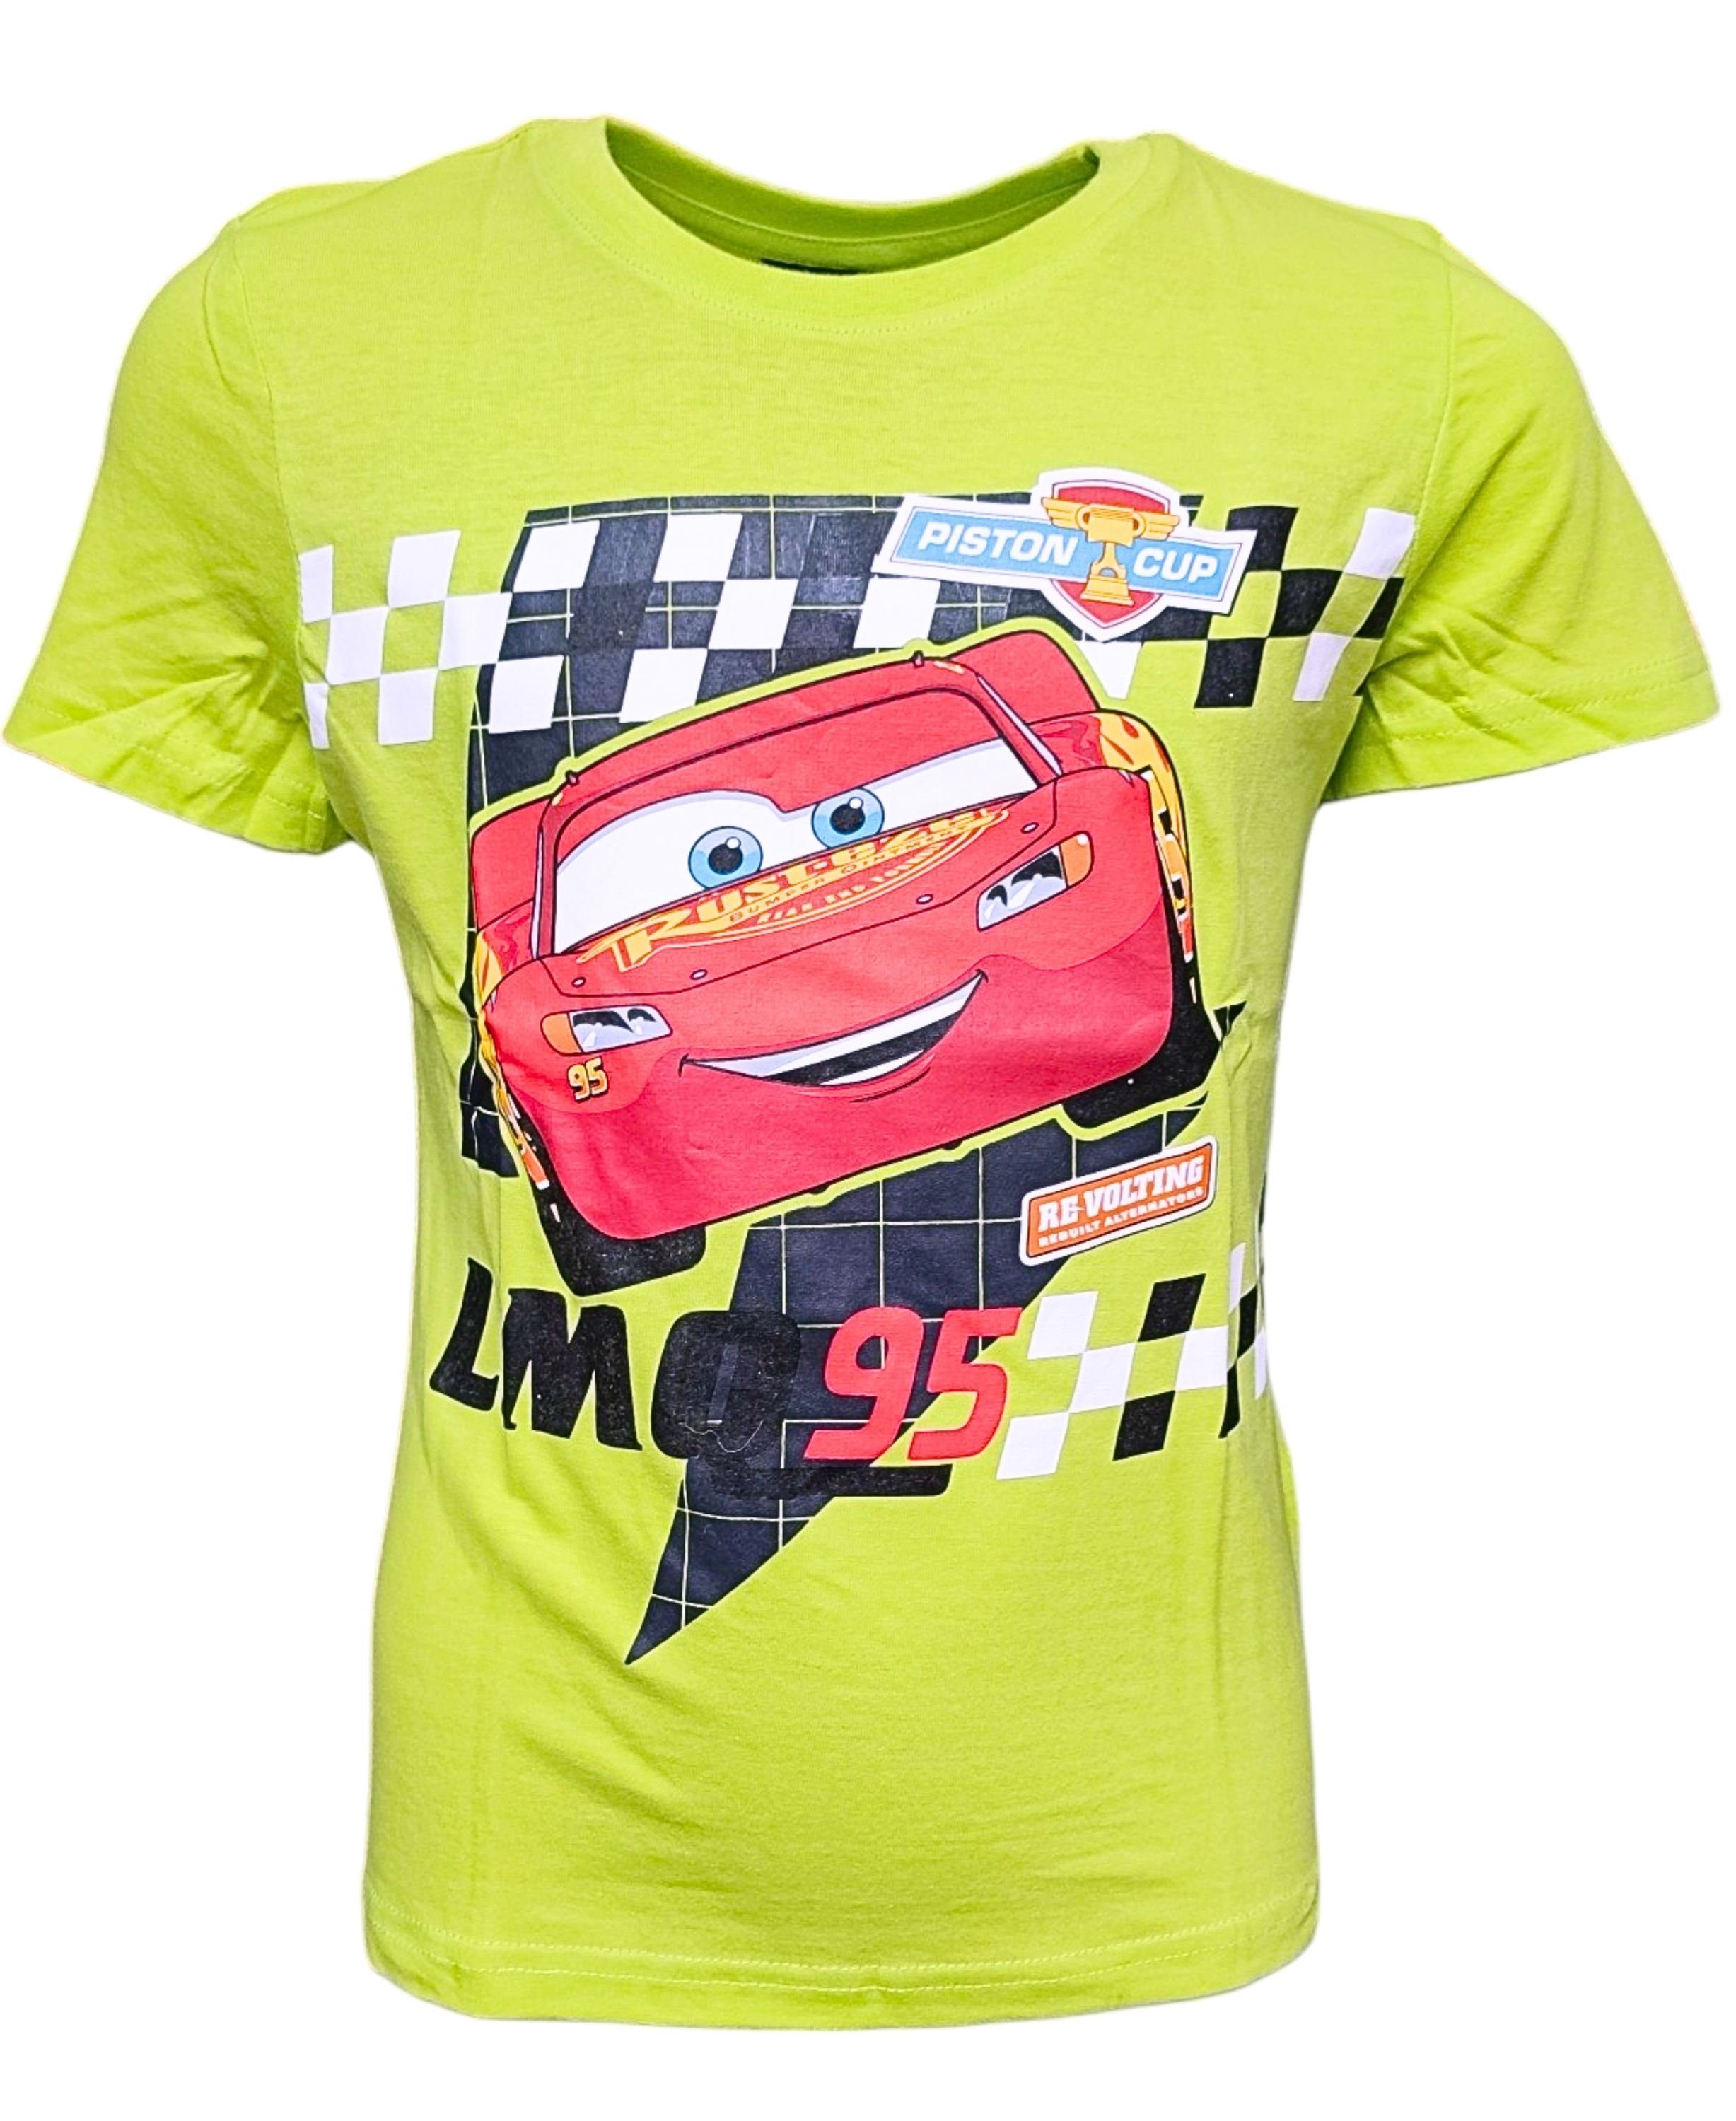 Disney Cars T-Shirt Lightning McQueen Jungen Kurzarmshirt aus Baumwolle Gr. 104 - 134 cm